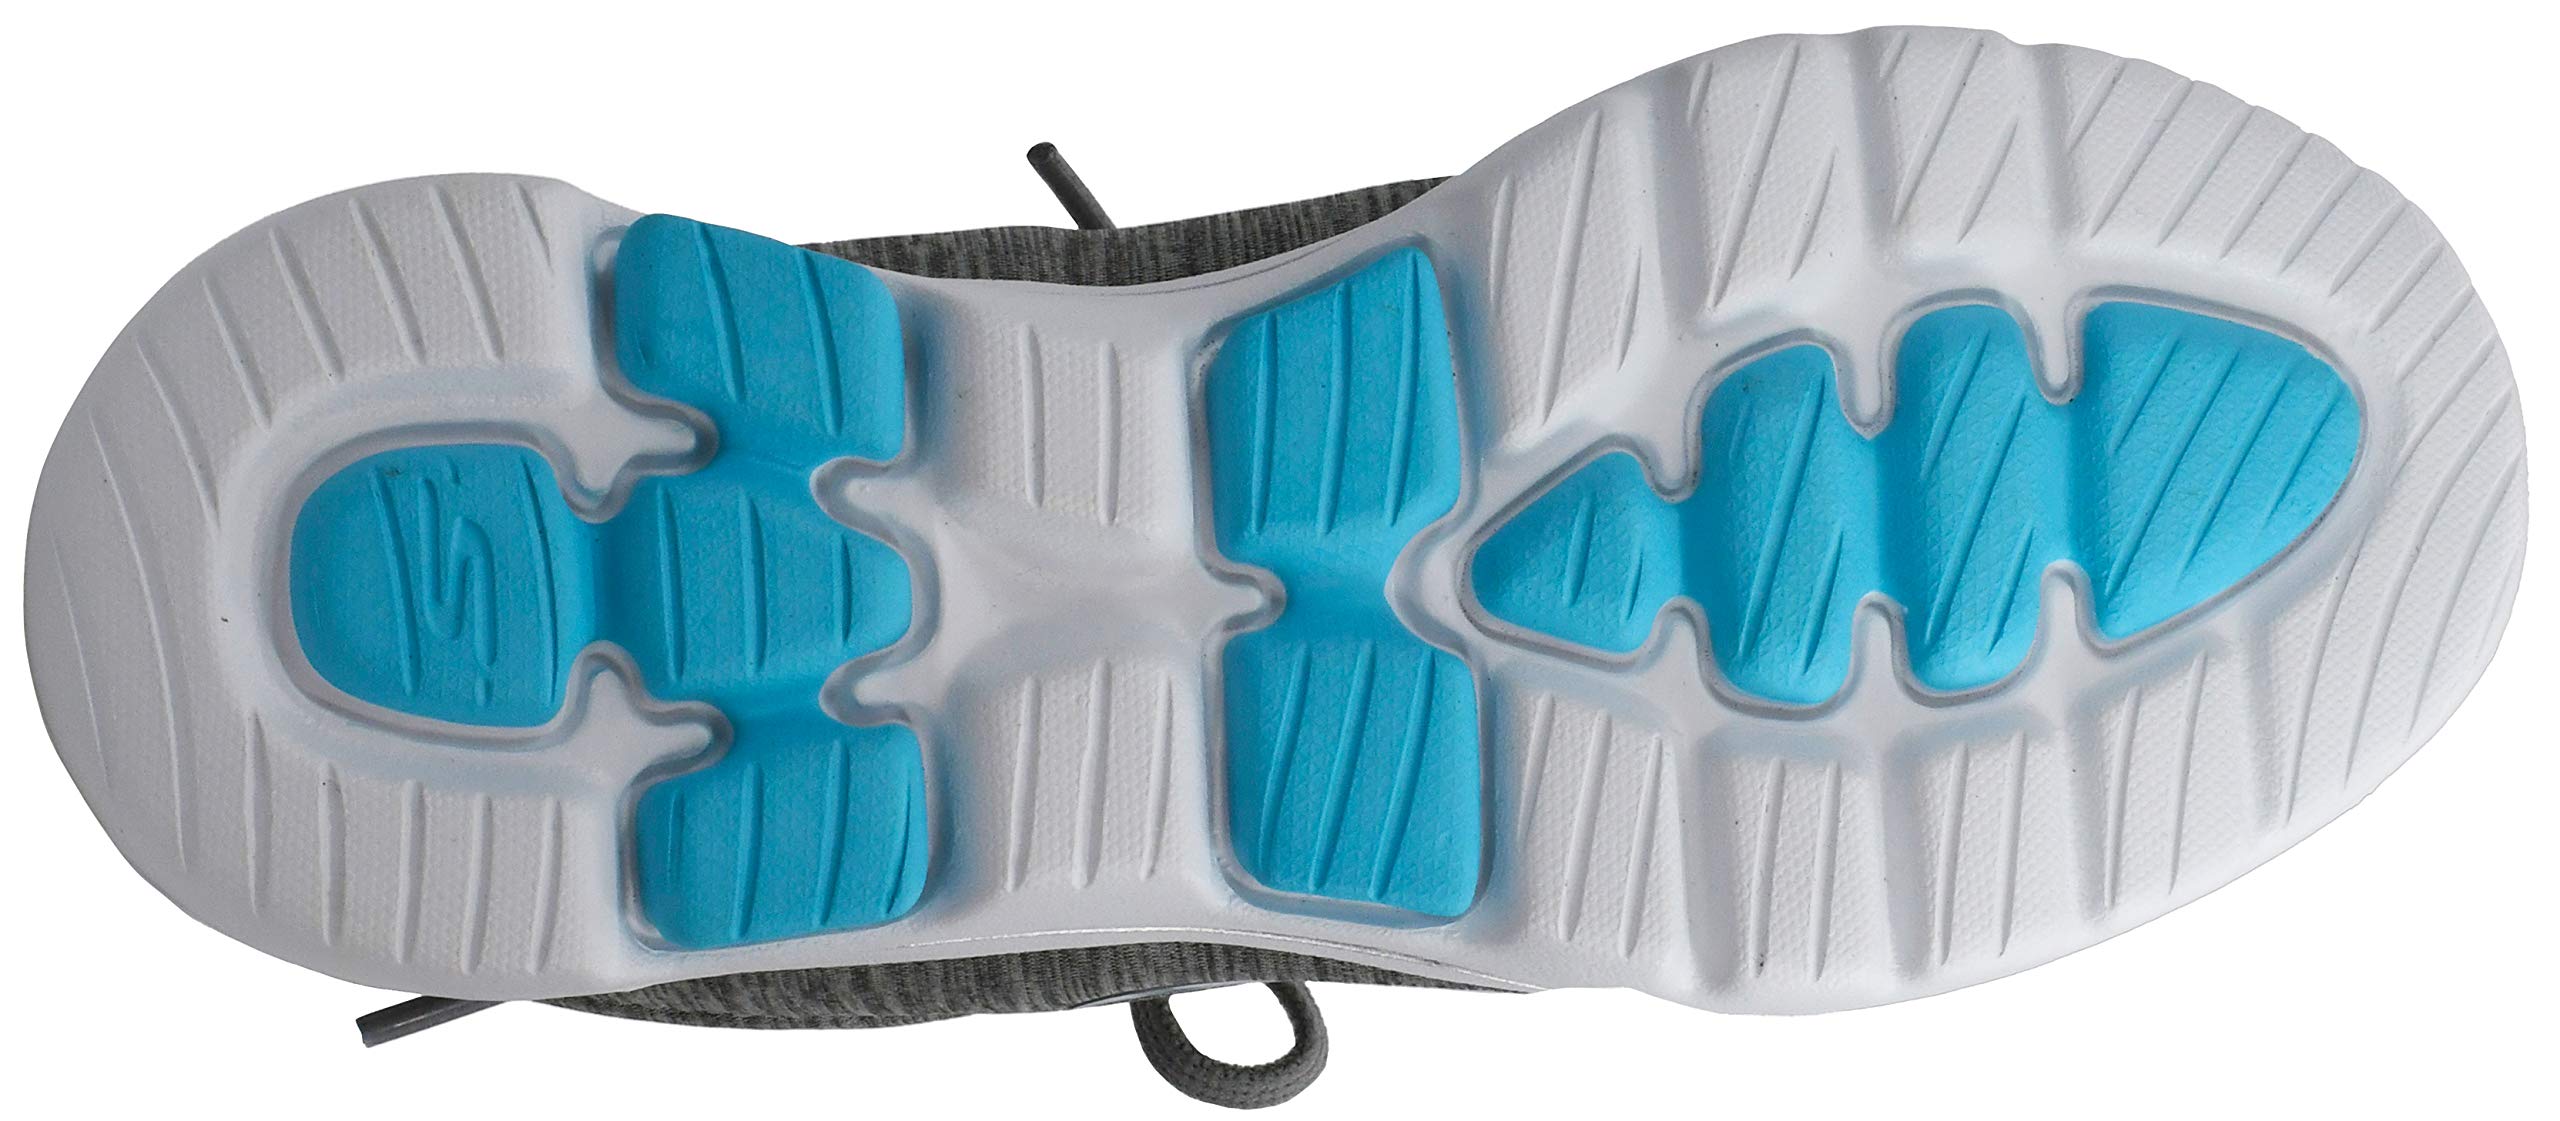 Skechers Women's Go Walk 5-True Sneaker, Grey/Light Blue, 7.5 M US